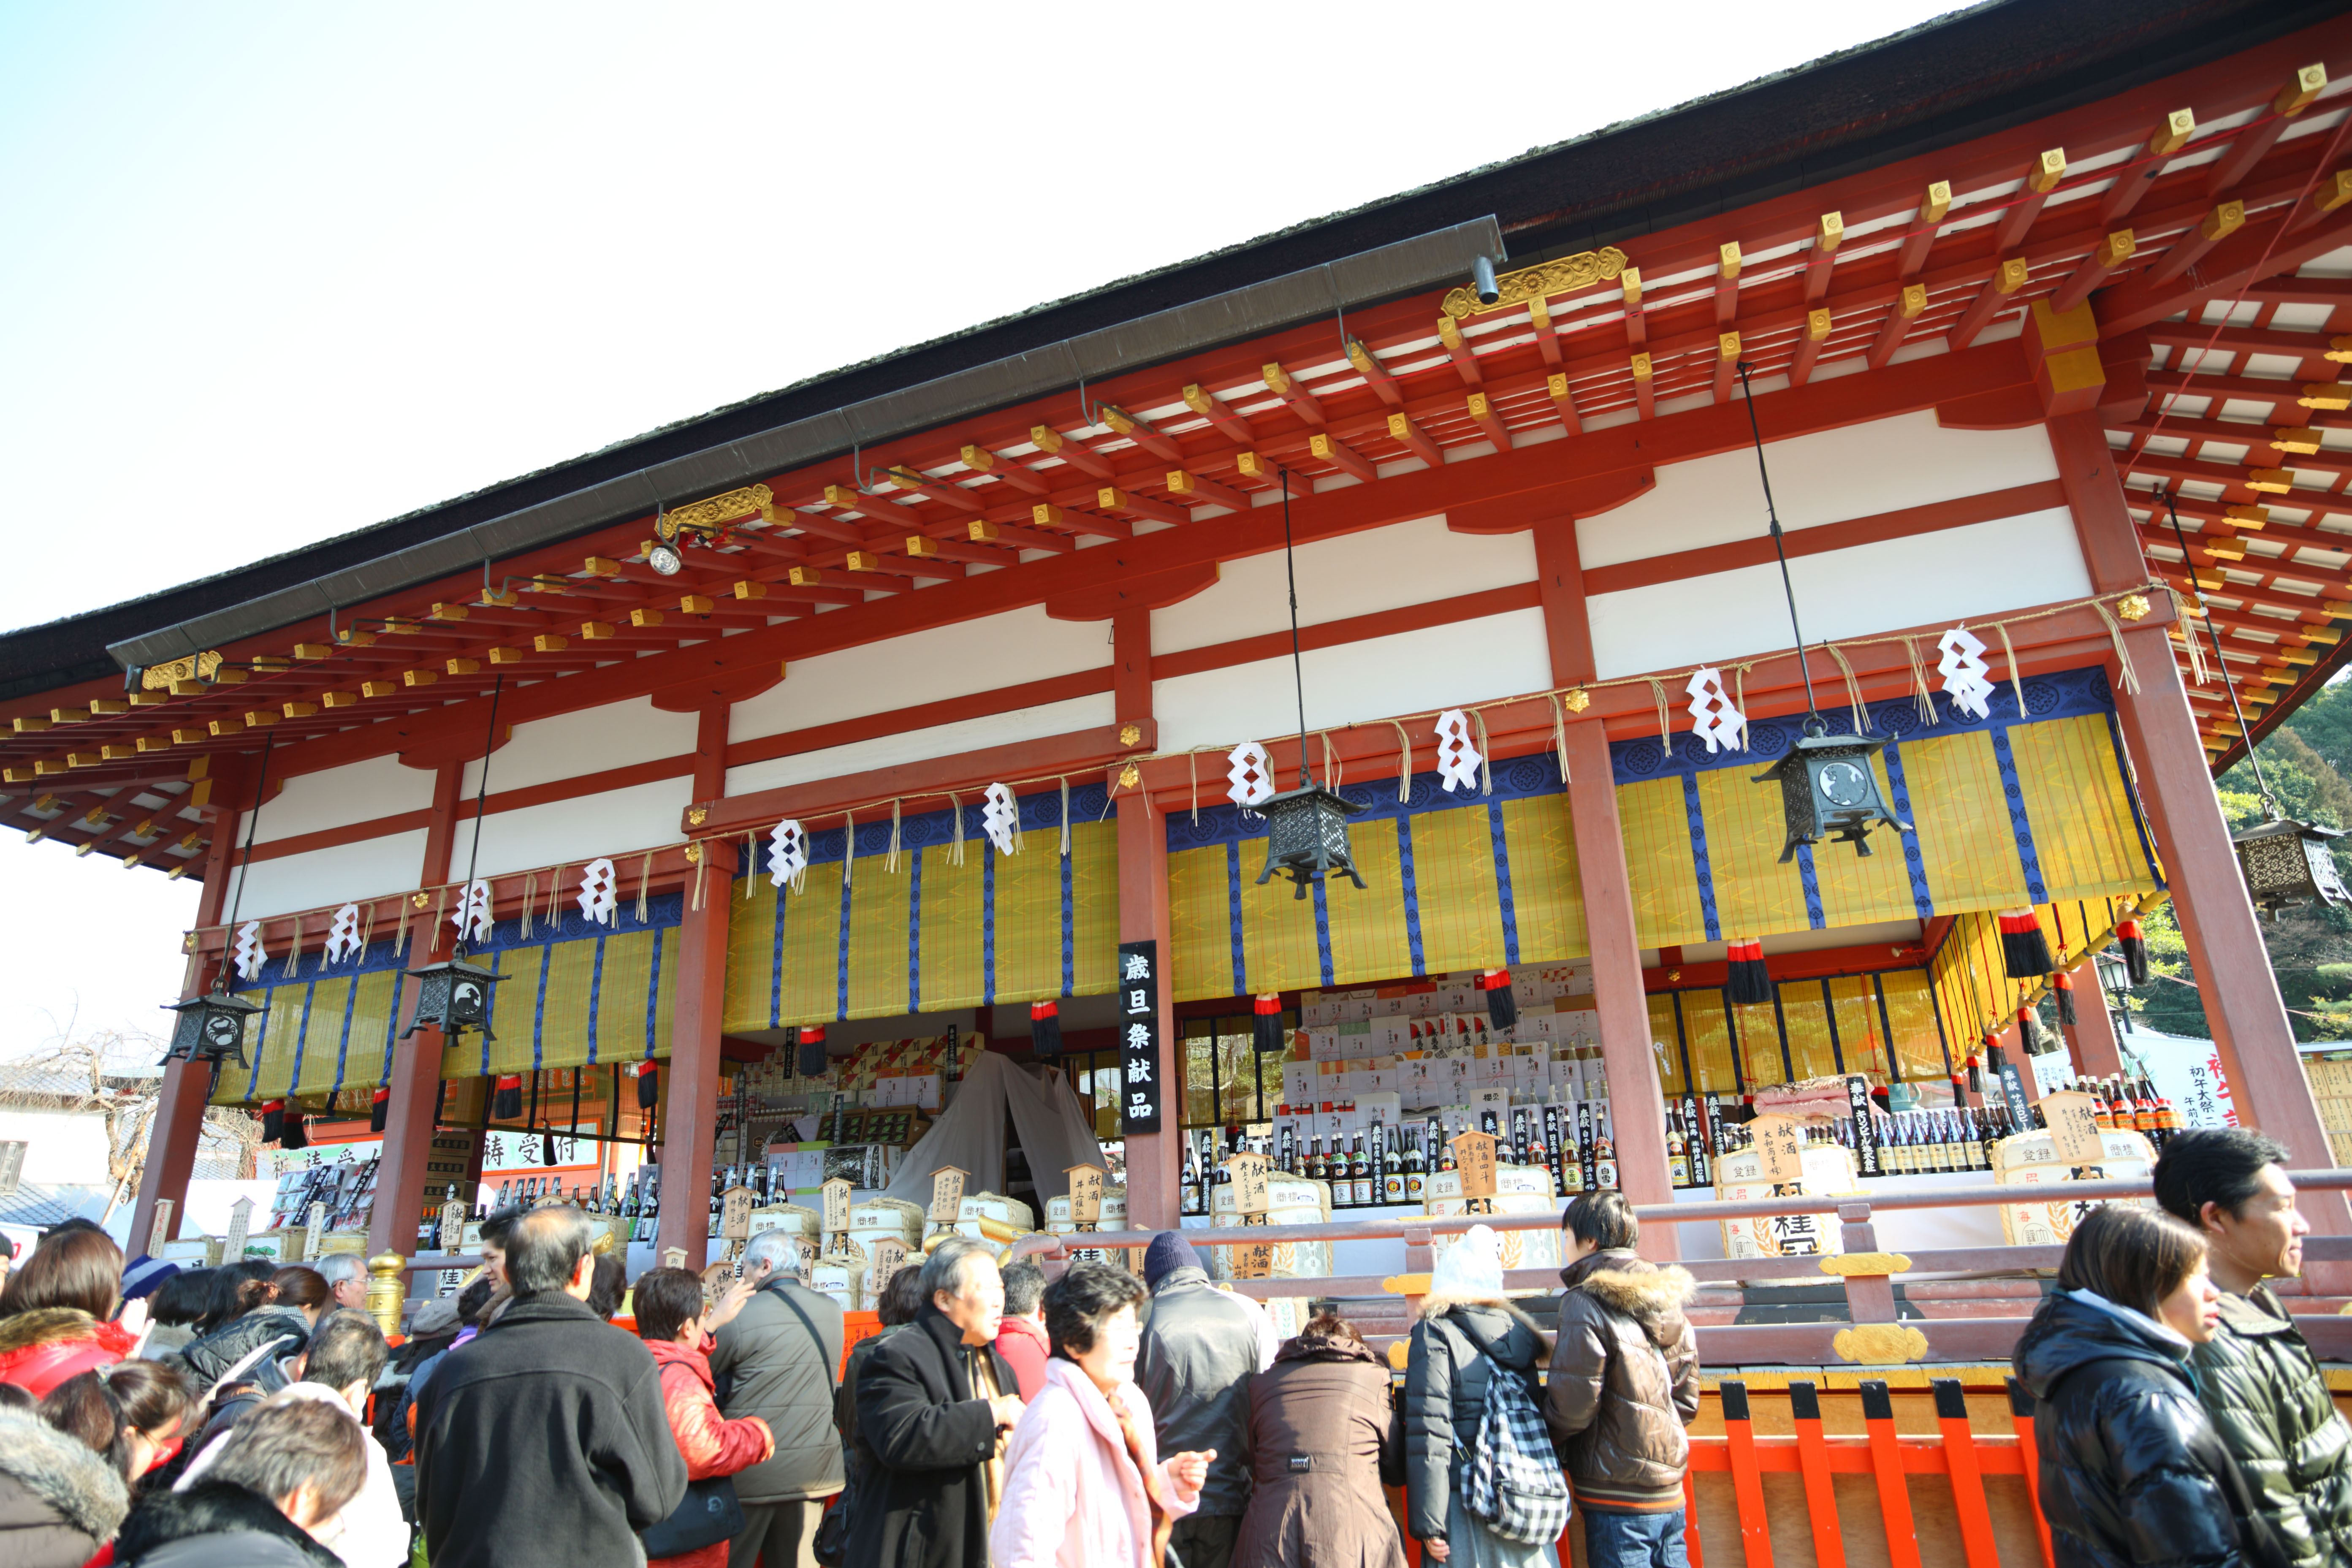 photo, la matire, libre, amnage, dcrivez, photo de la rserve,Fushimi-Inari Taisha temple, La visite de nouvelle anne  un temple shintoste, La crmonie de nouvelle anne, Inari, renard